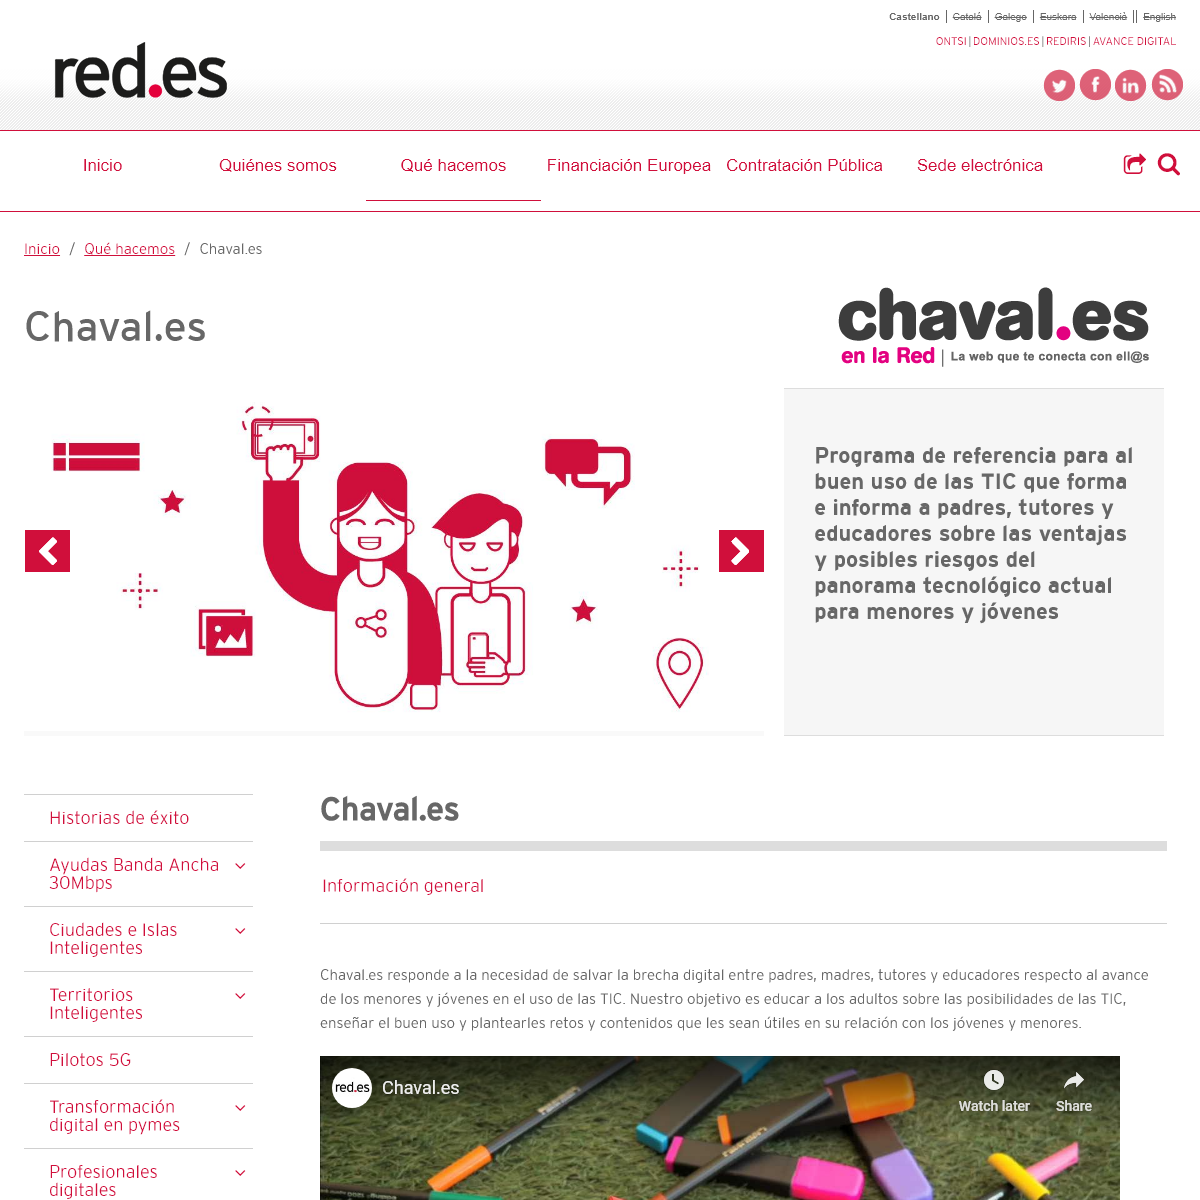 Chaval.es - Red.es